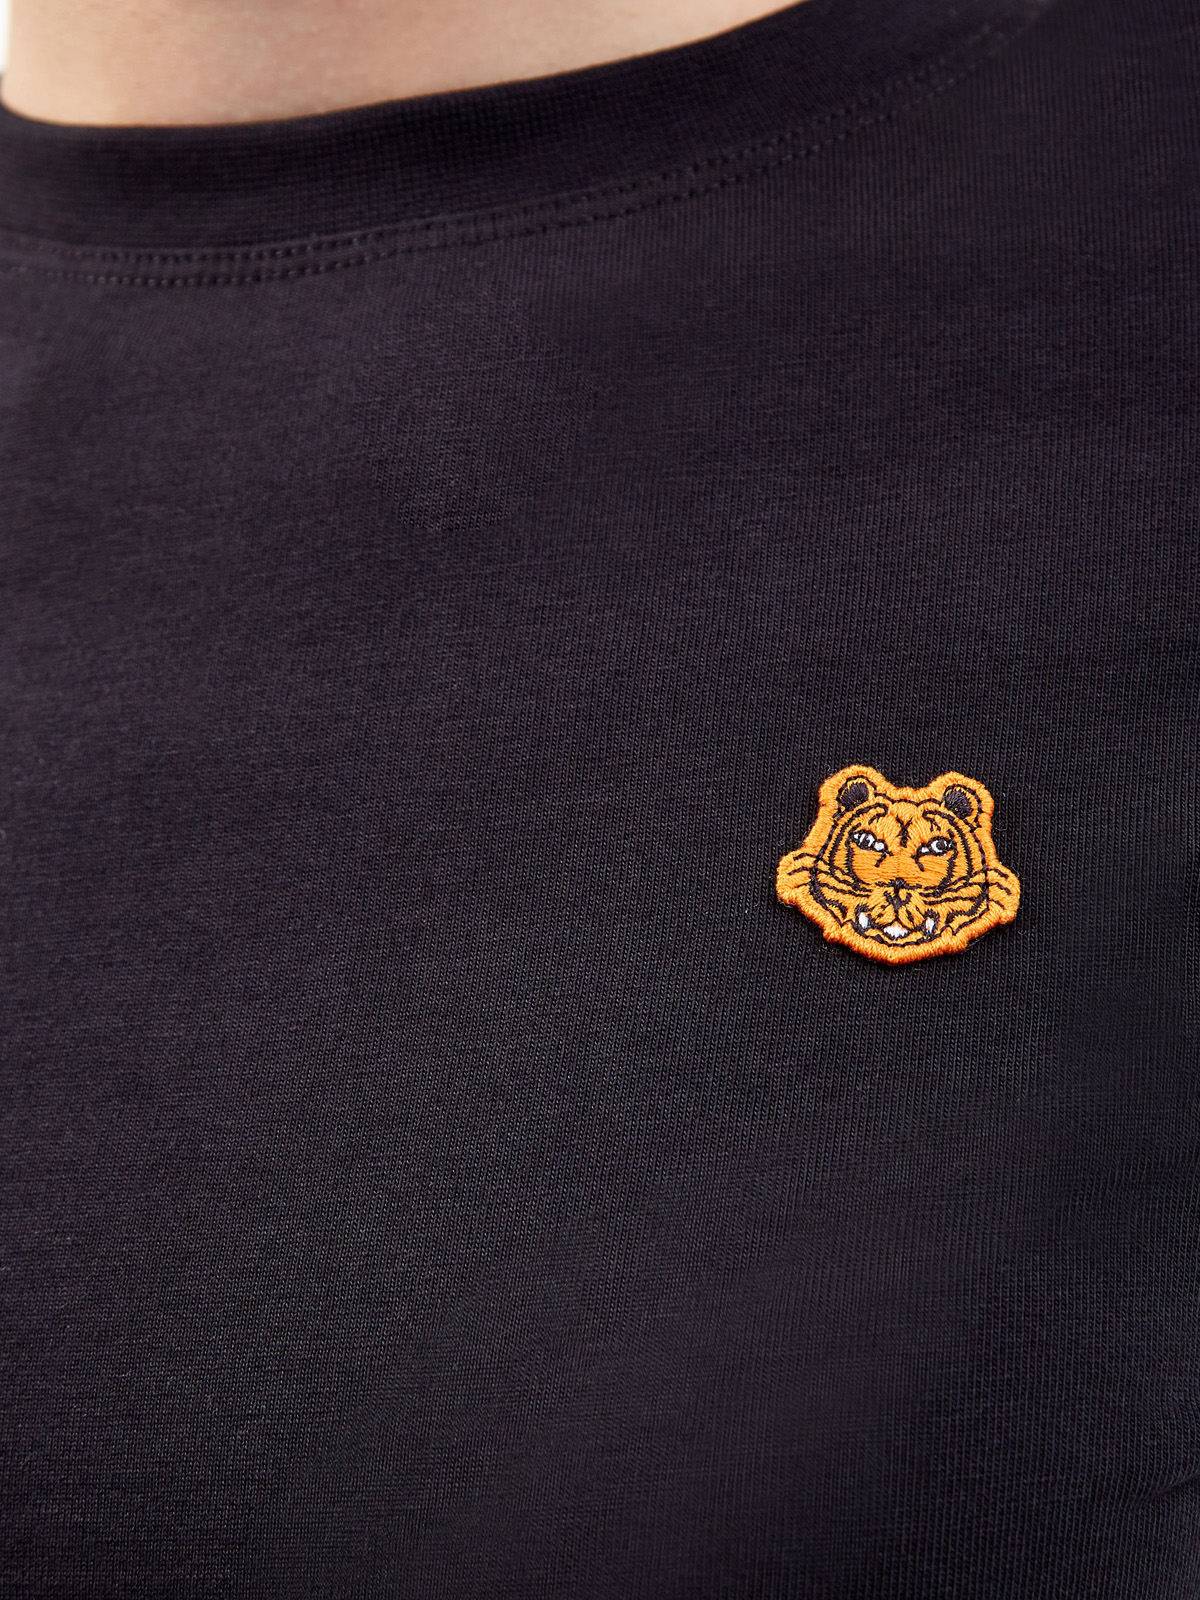 Хлопковая футболка из гладкого джерси с вышитой эмблемой бренда KENZO, цвет черный, размер S;L;XS - фото 5